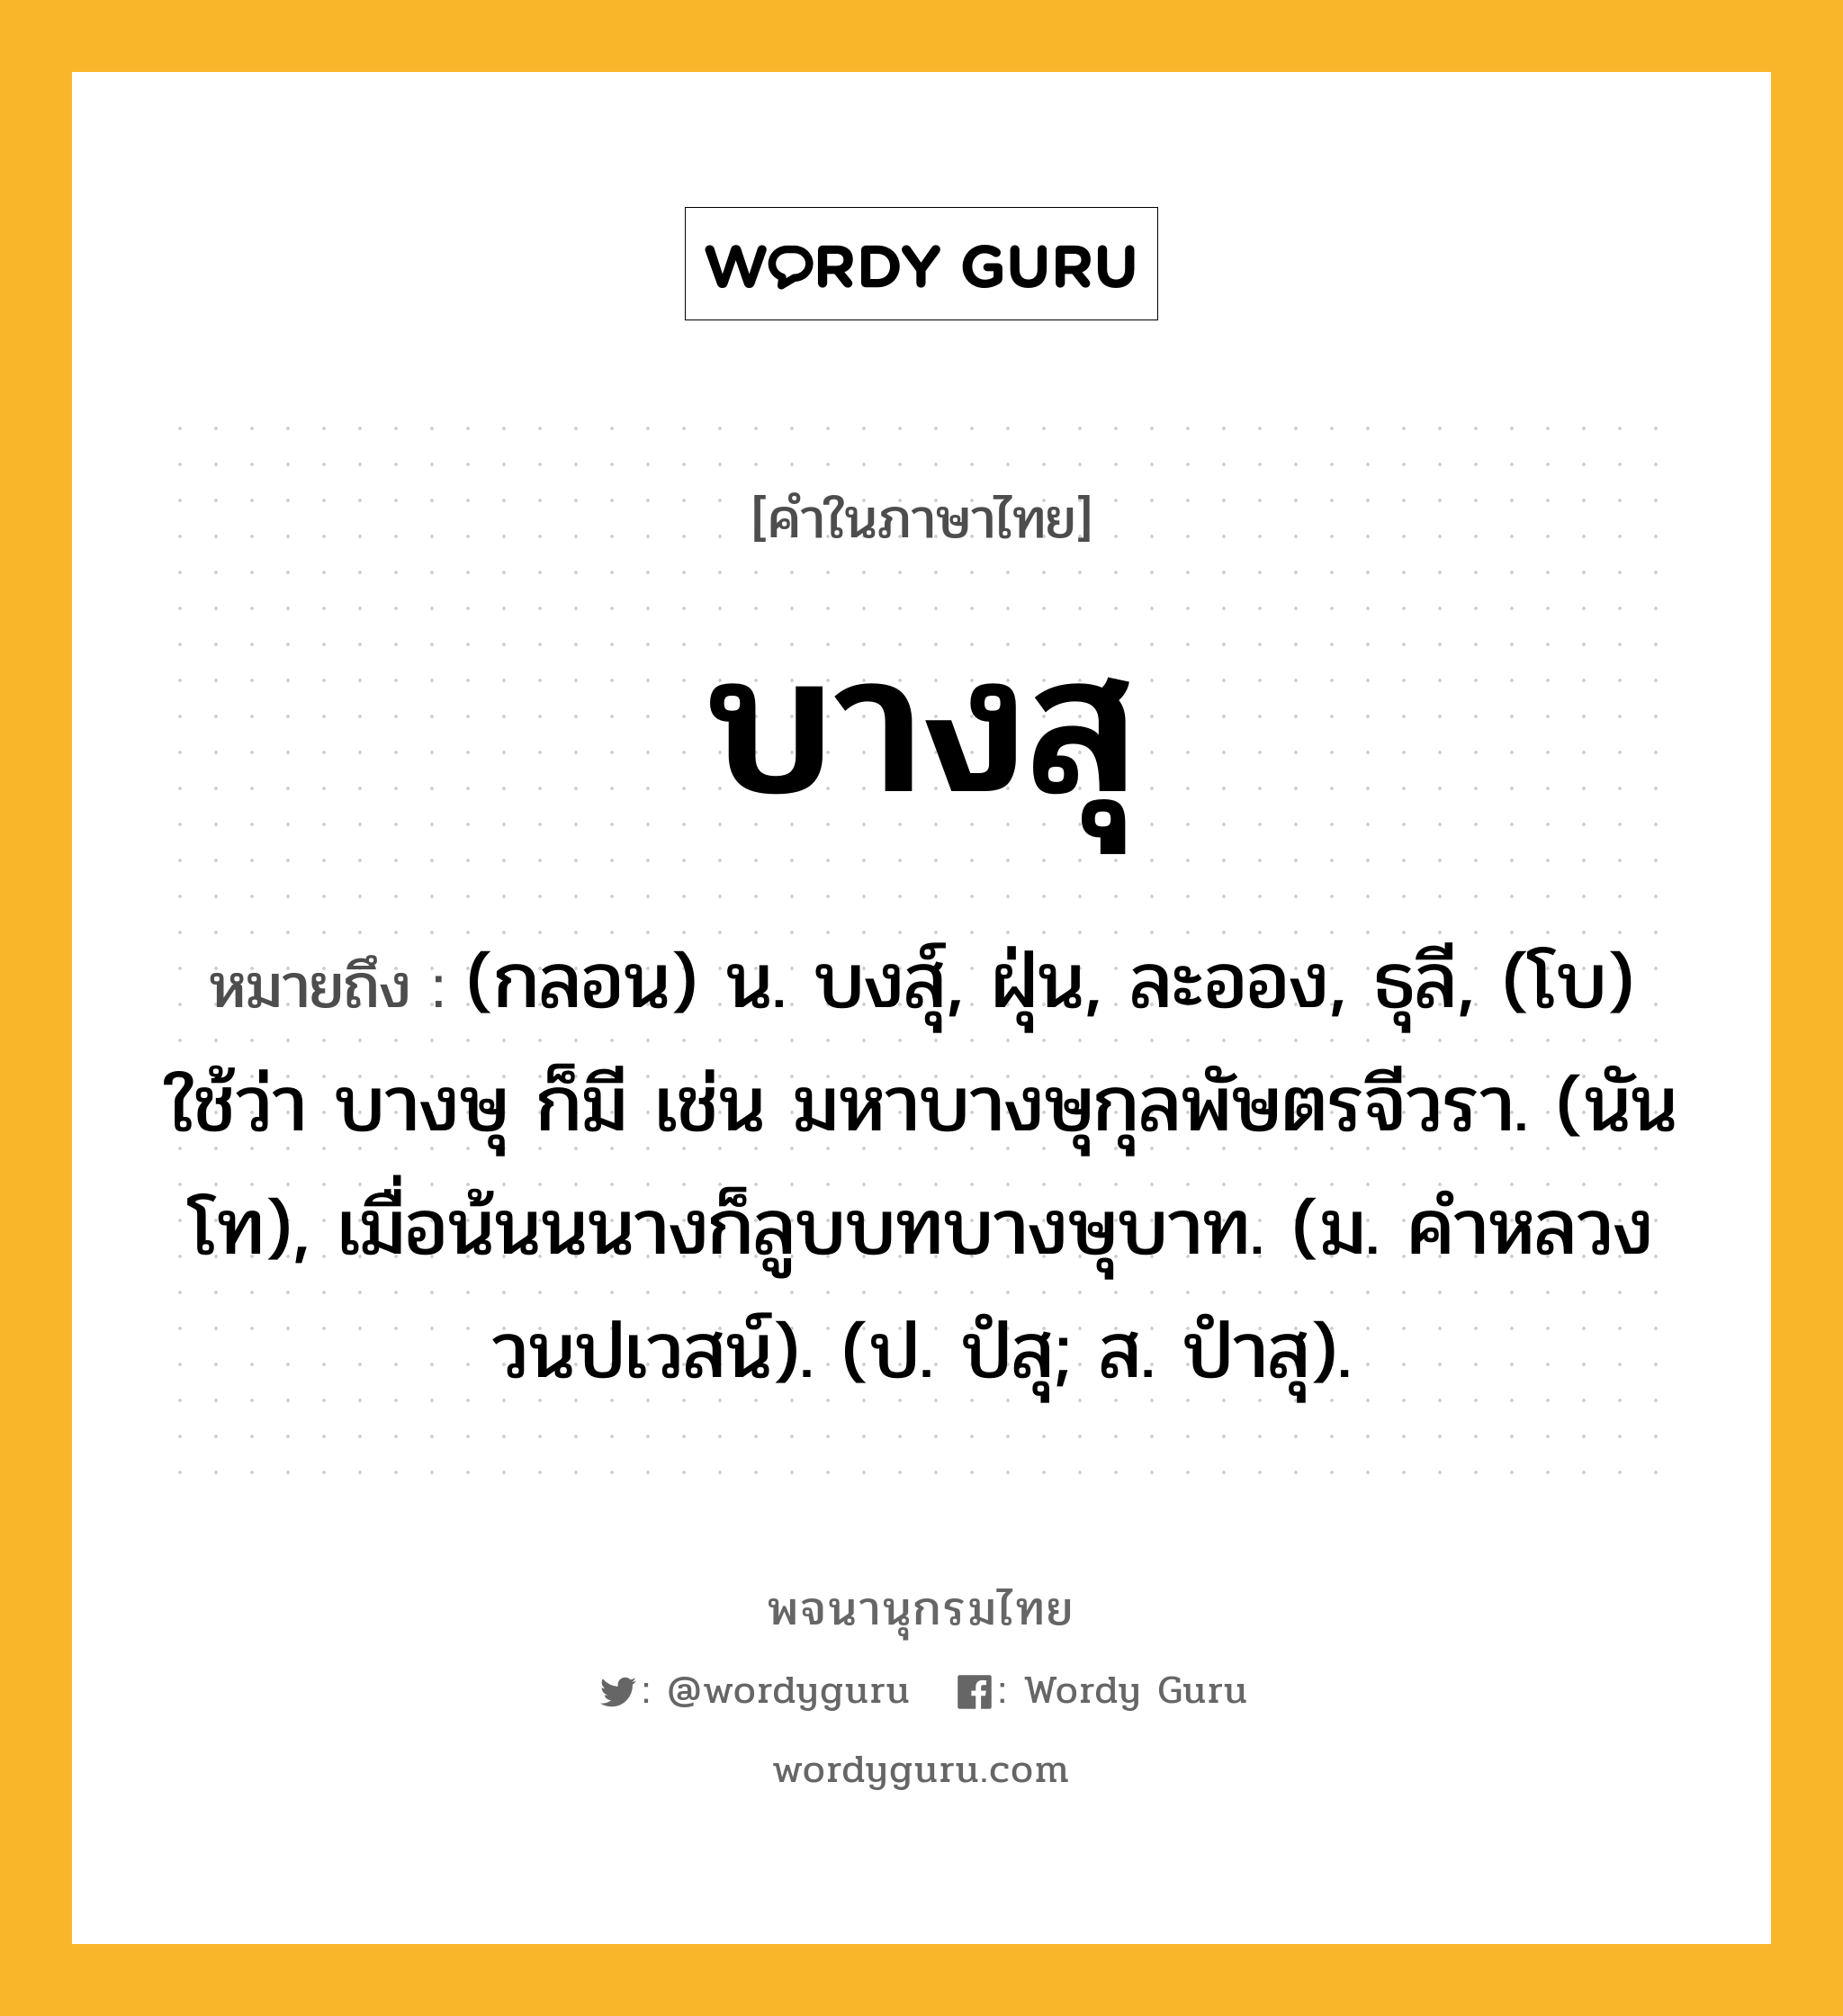 บางสุ ความหมาย หมายถึงอะไร?, คำในภาษาไทย บางสุ หมายถึง (กลอน) น. บงสุ์, ฝุ่น, ละออง, ธุลี, (โบ) ใช้ว่า บางษุ ก็มี เช่น มหาบางษุกุลพัษตรจีวรา. (นันโท), เมื่อน้นนนางก็ลูบบทบางษุบาท. (ม. คําหลวง วนปเวสน์). (ป. ปํสุ; ส. ปําสุ).